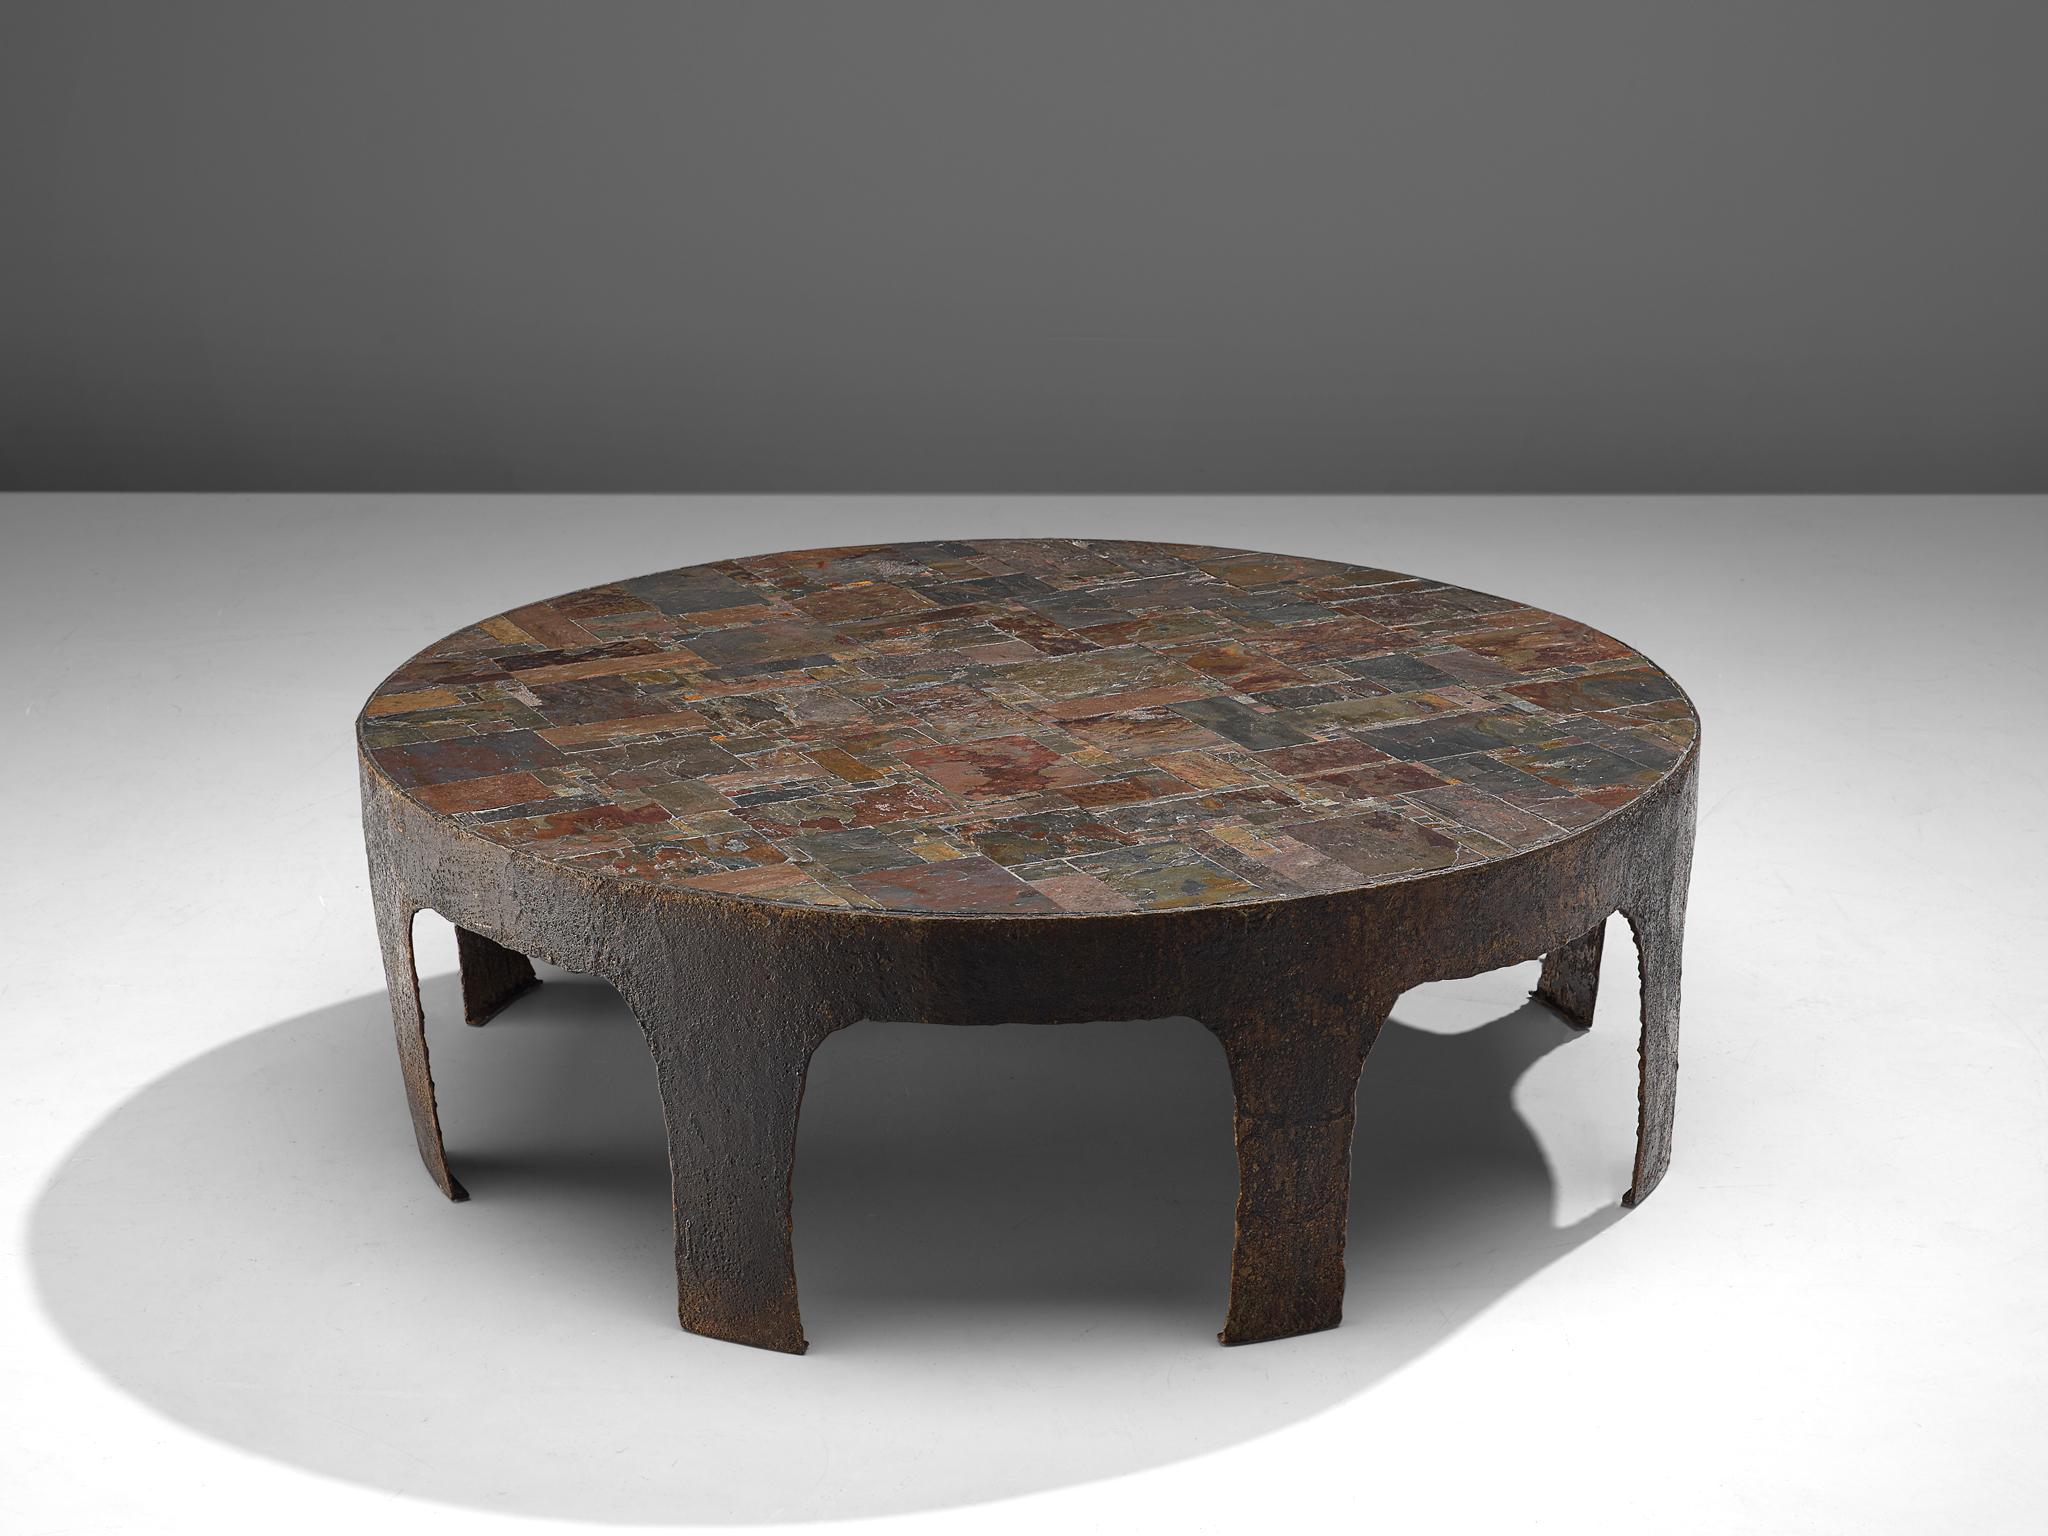 Pia Manu, table basse, fer forgé, céramique et pierre naturelle, Belgique, années 1960.

Cette pièce unique, fabriquée à la main avec une armature en fer découpé et forgé, est conçue dans l'atelier de Pia Manu. Les détails intéressants sont les